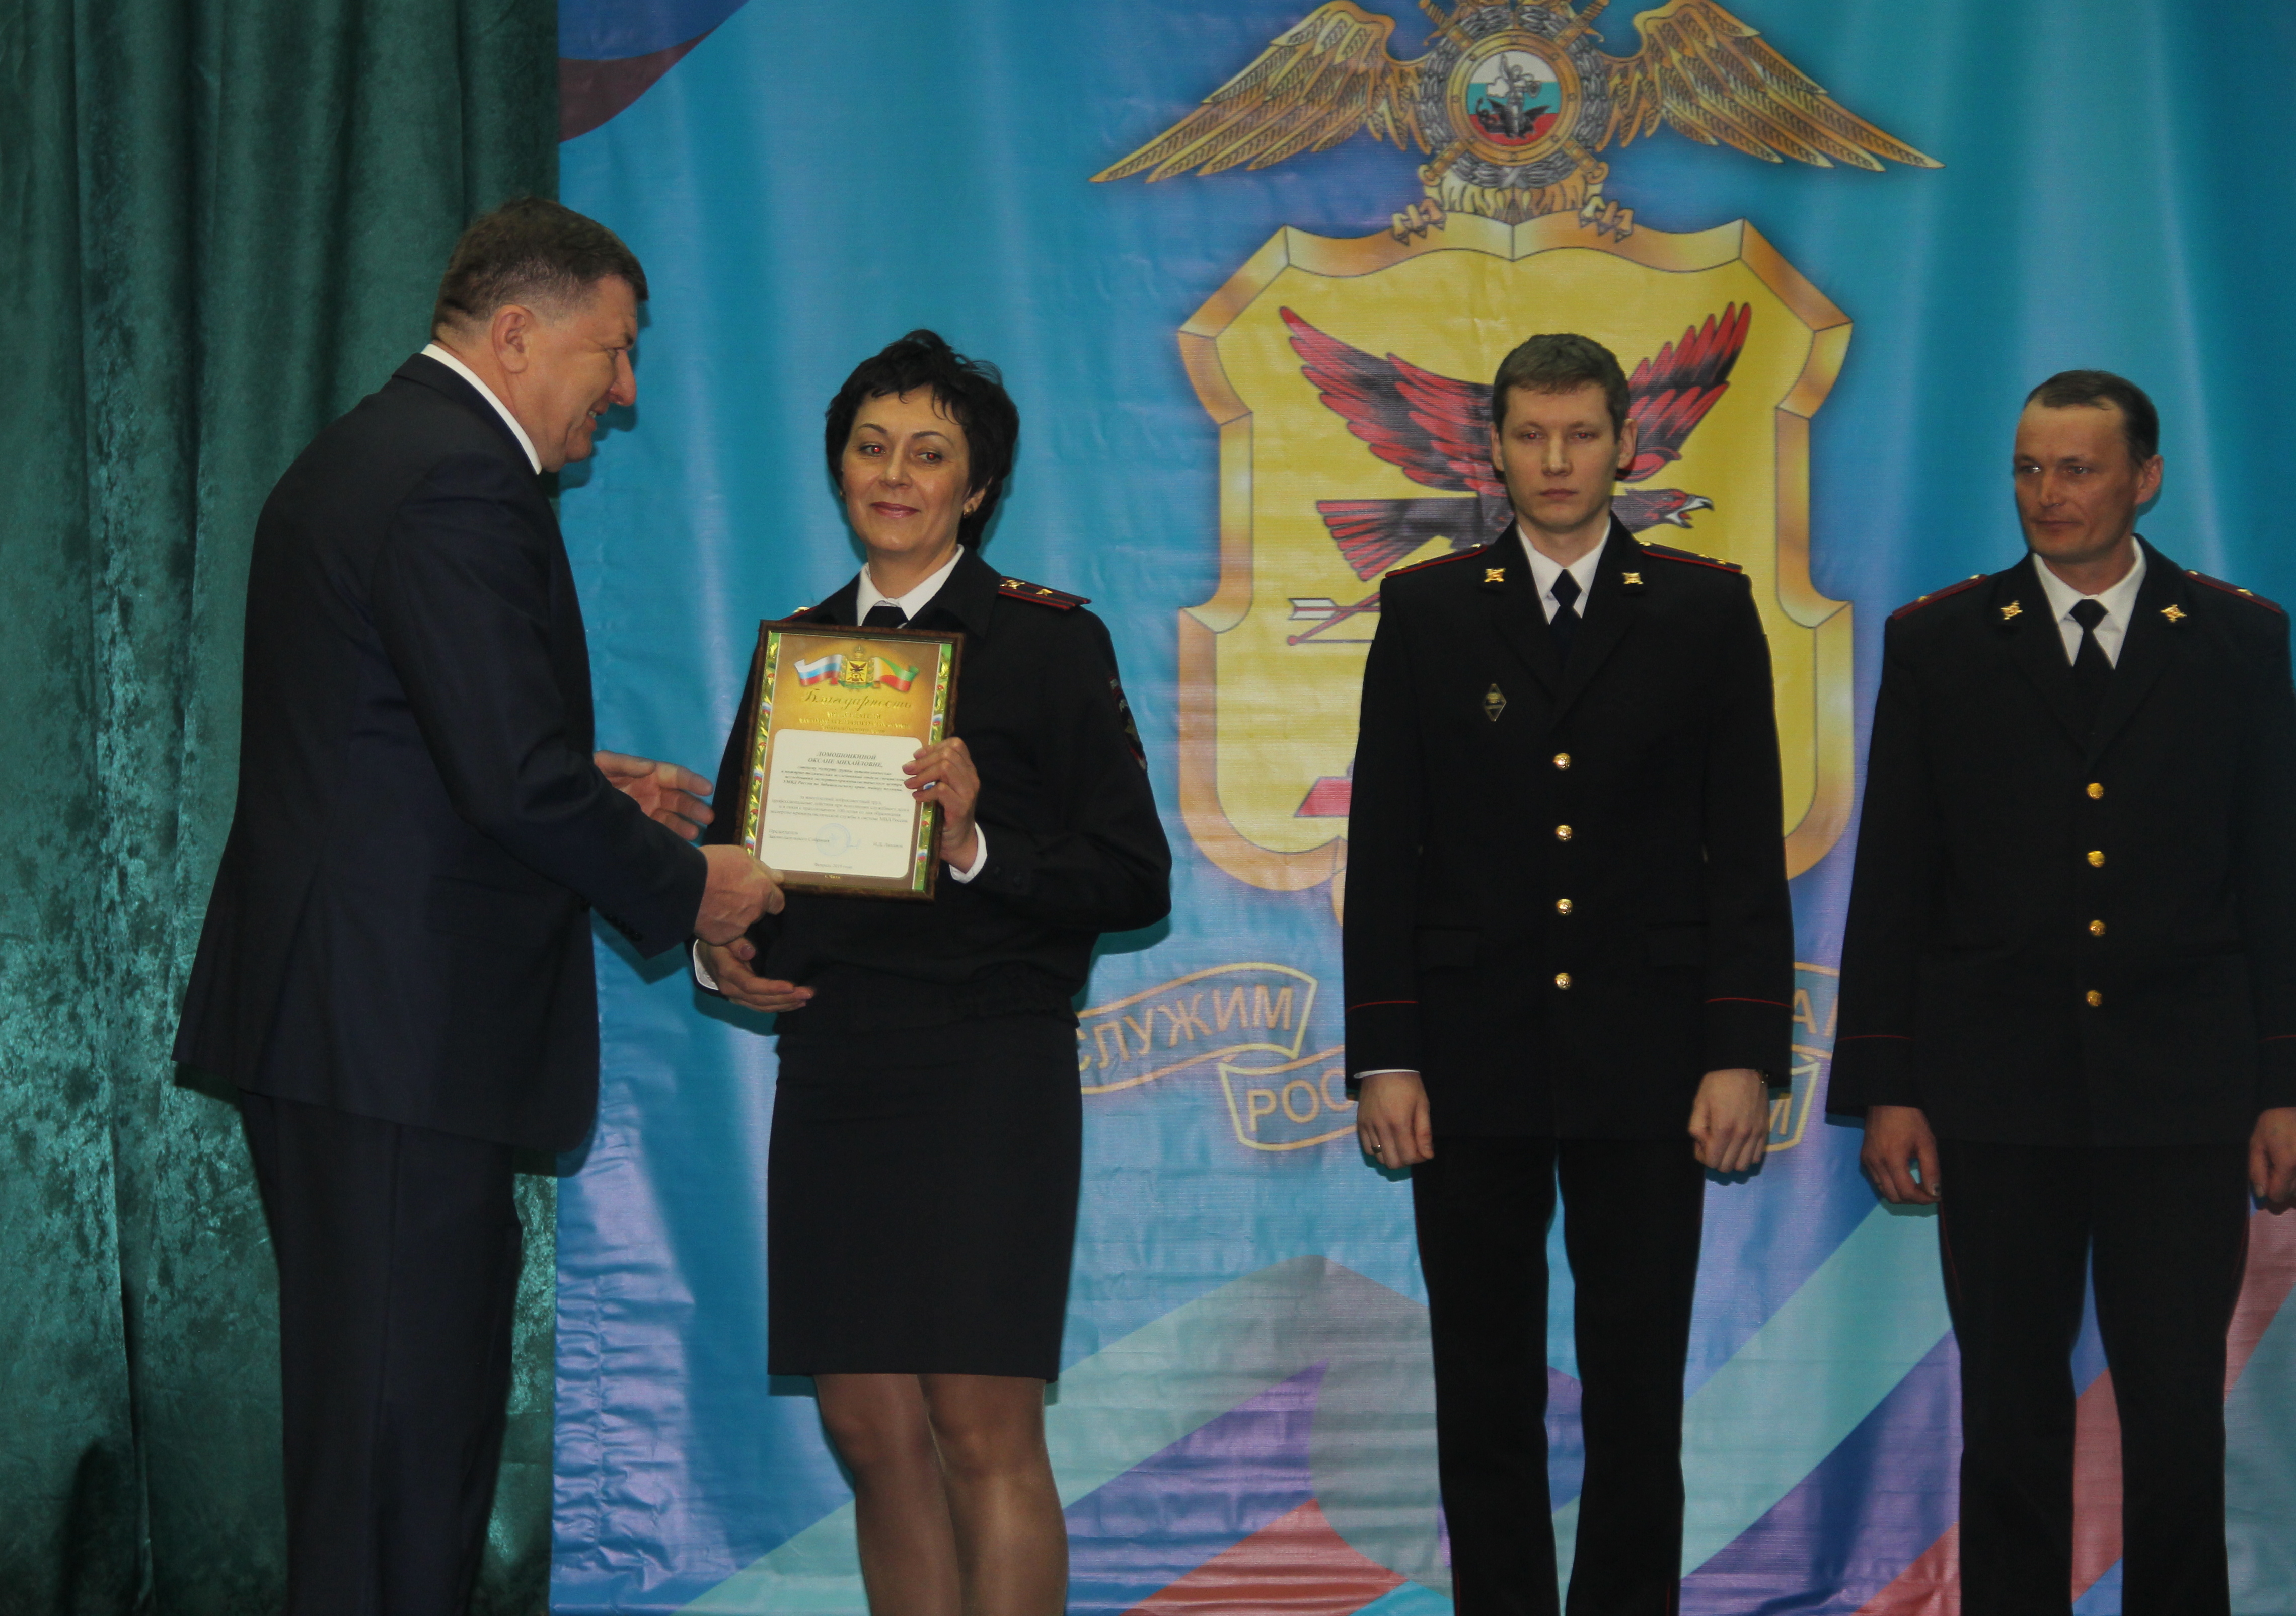 Спикер поздравил со 100-летием службы забайкальских экспертов-криминалистов